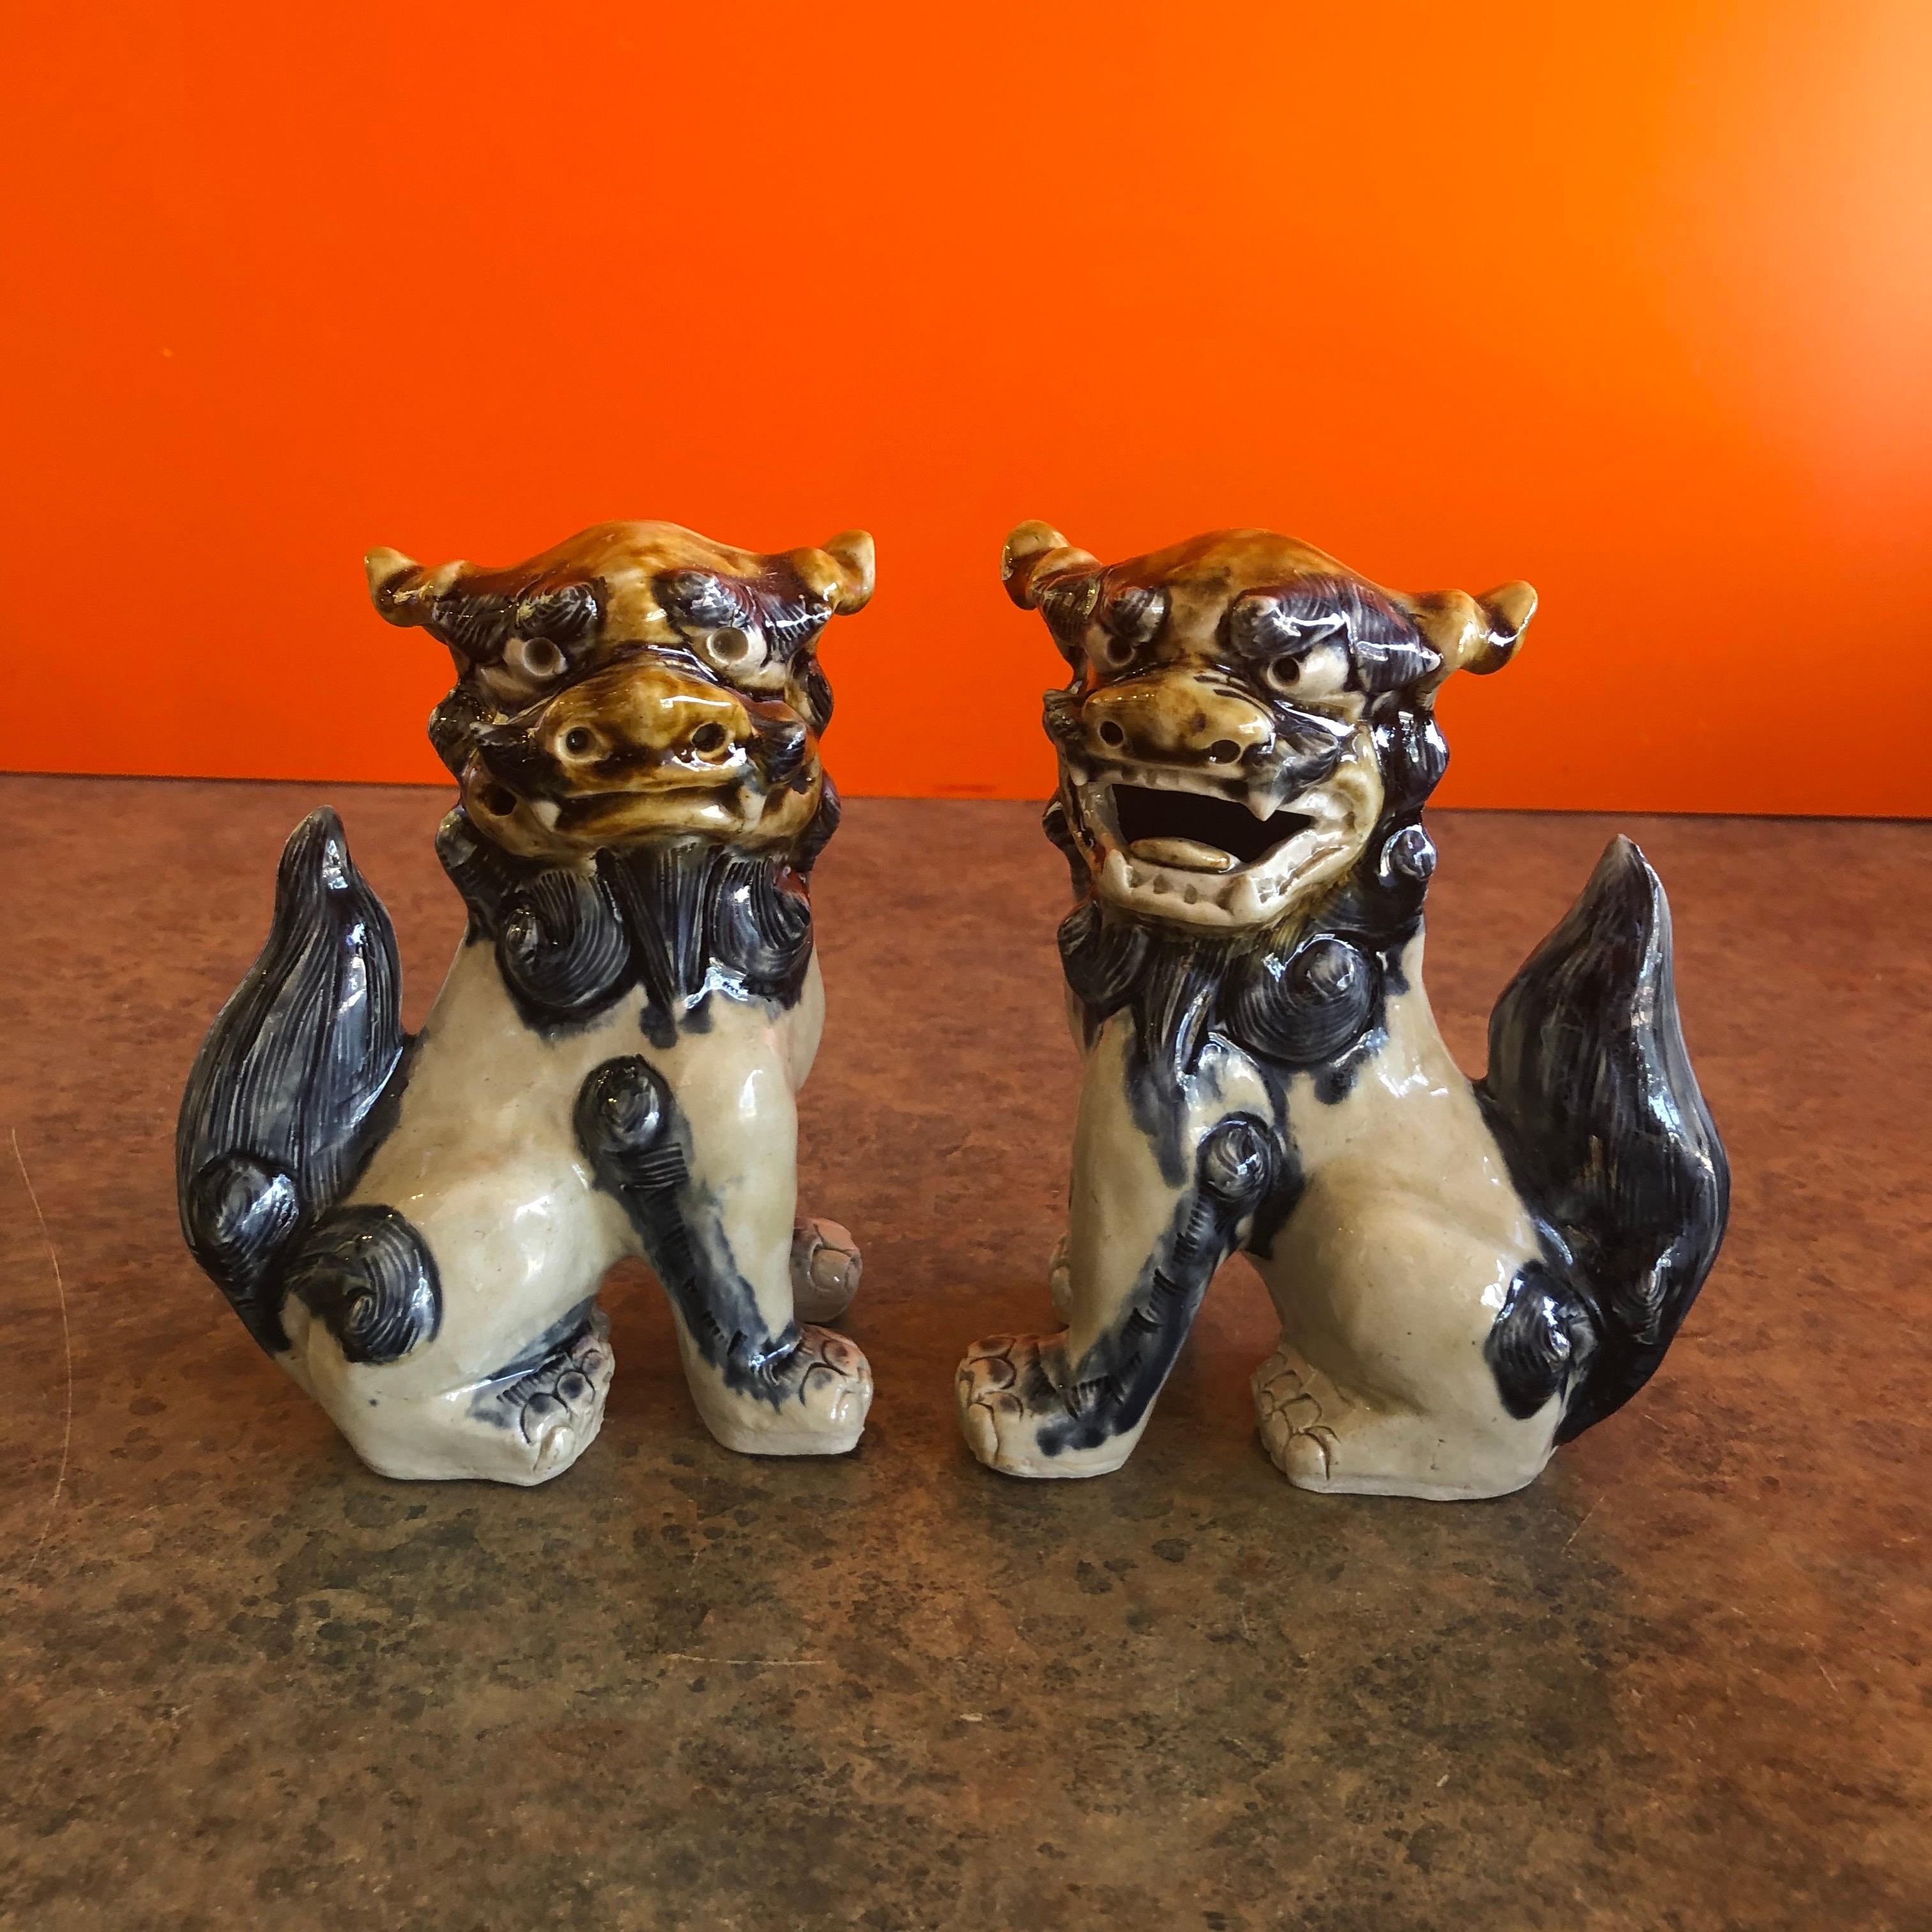 Ein sehr schönes Paar brauner, cremefarbener und blauer Foo Dogs aus den 1970er Jahren. Hervorragender Zustand und Patina; das Paar ist aus Keramik gefertigt und eignet sich hervorragend als Buchstütze oder als witziges Dekorationselement für jeden